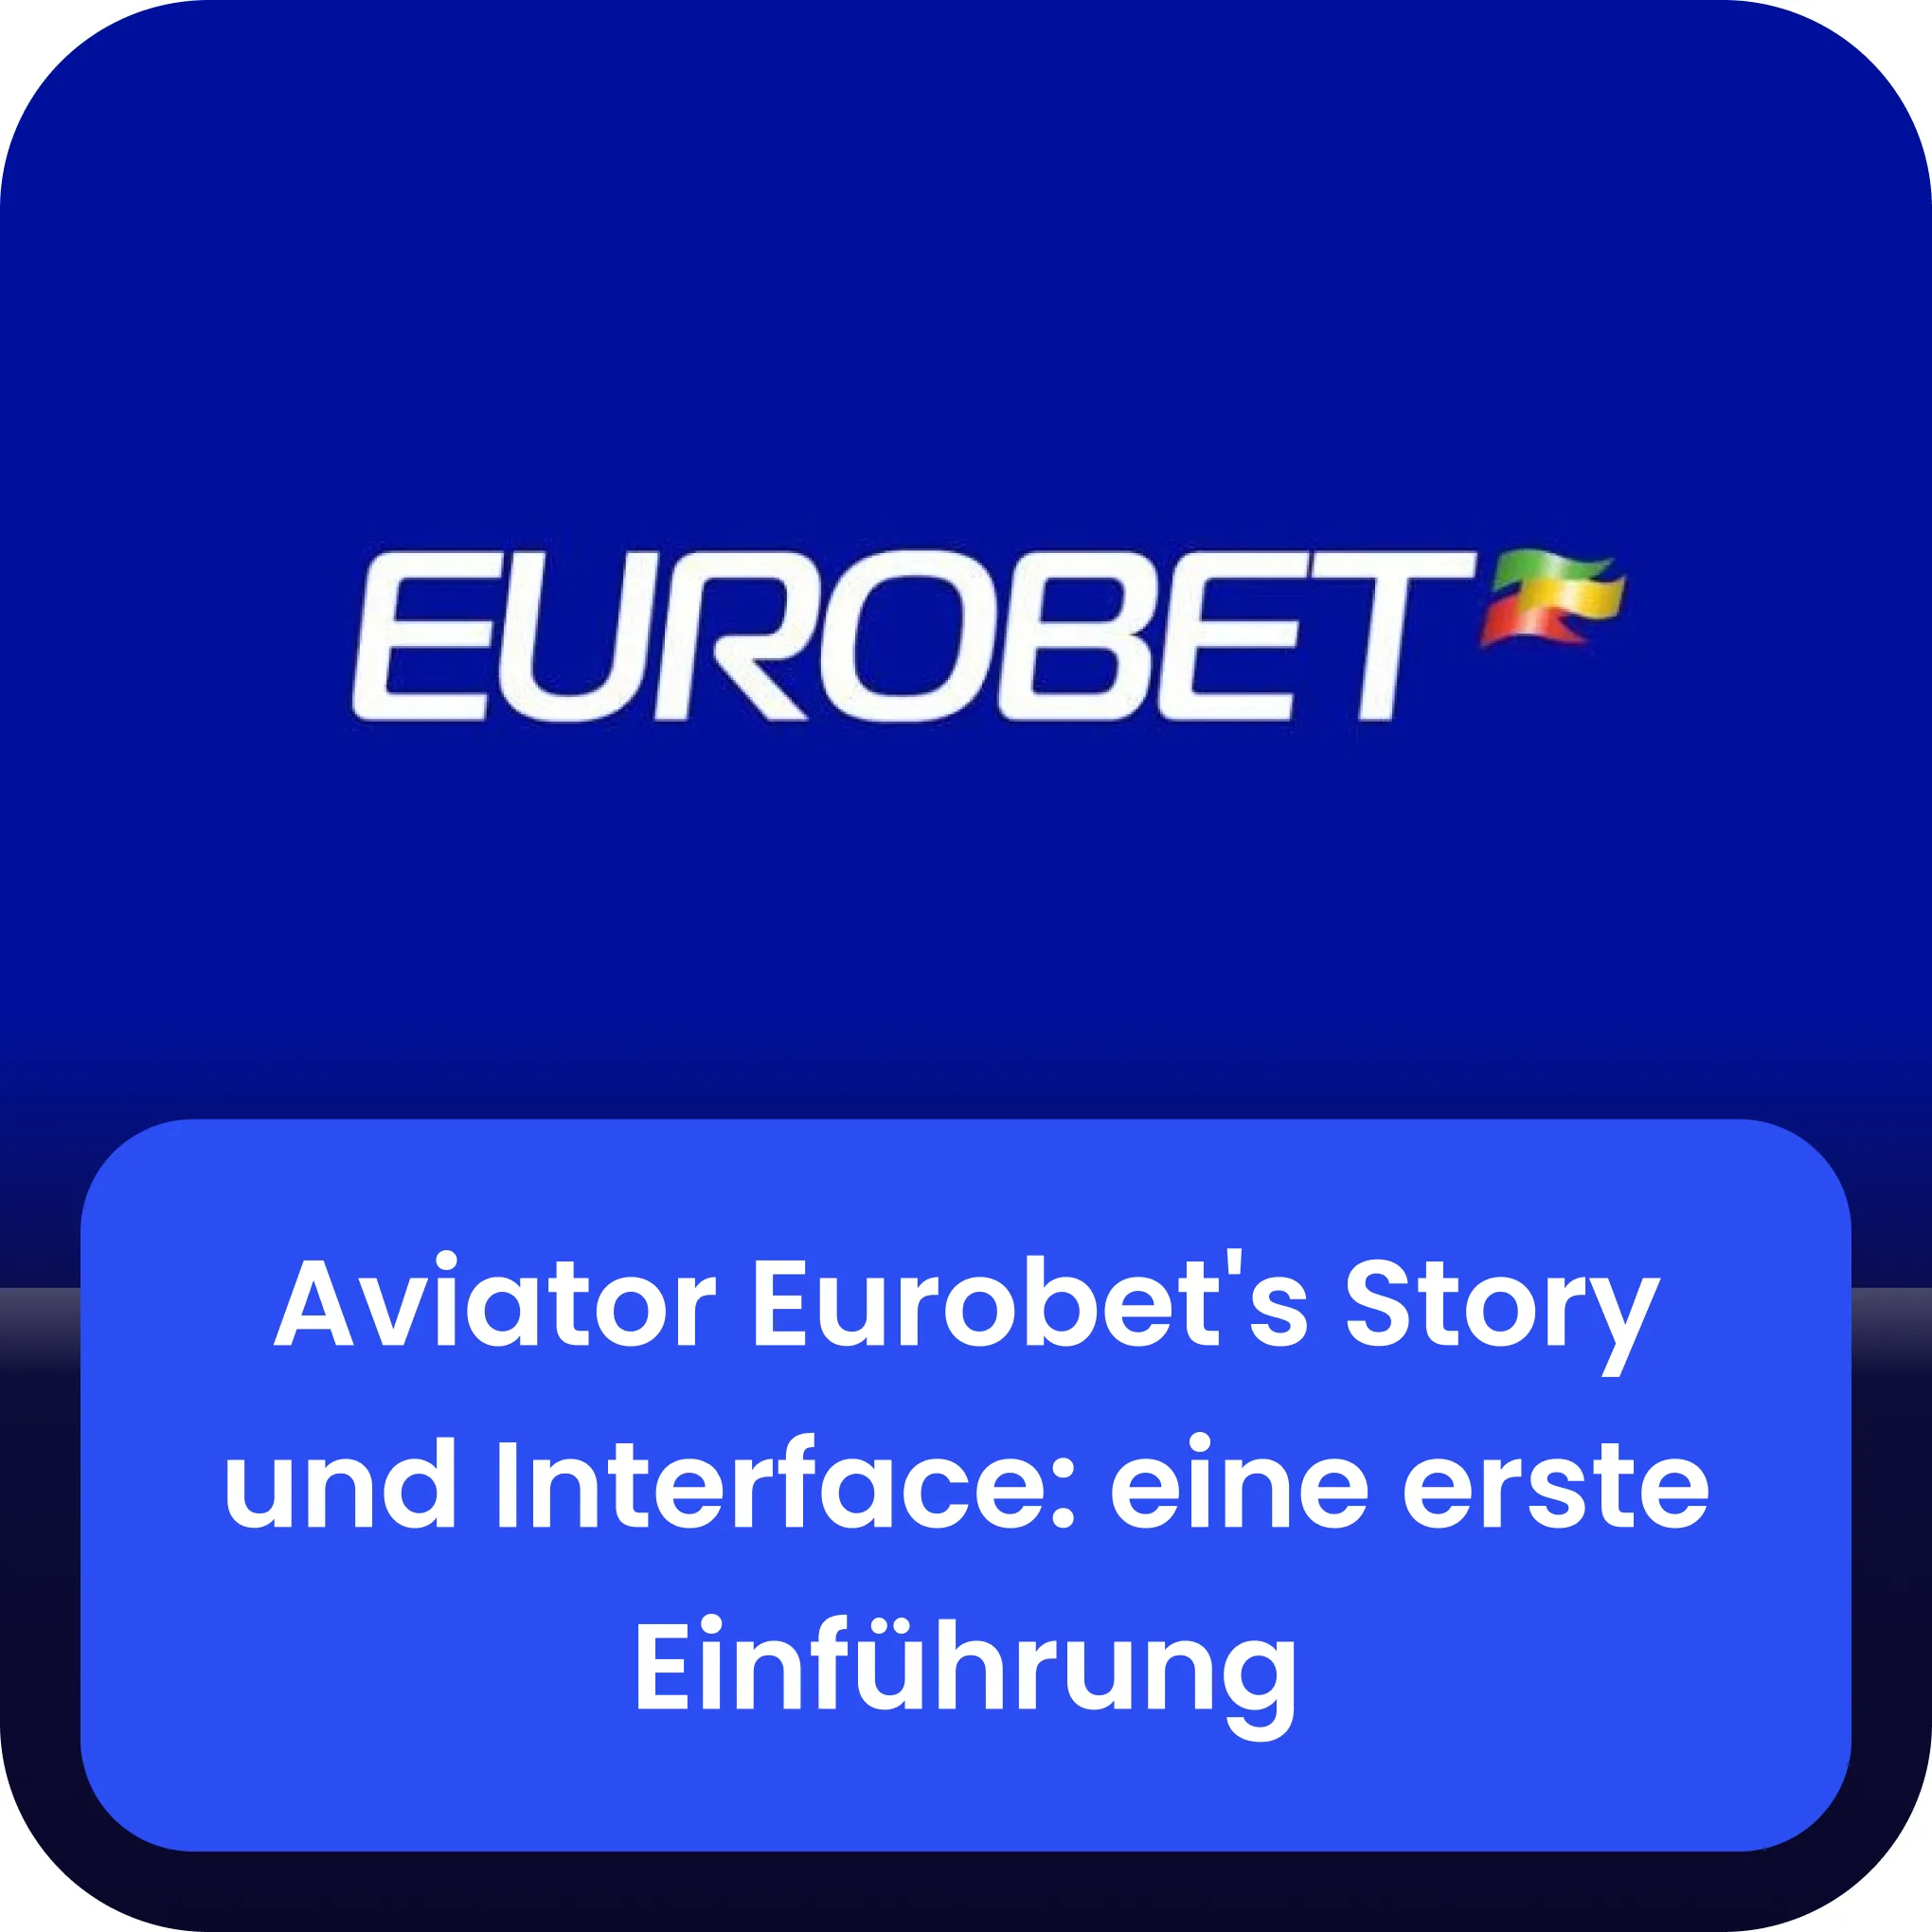 eurobet aviator Handlung